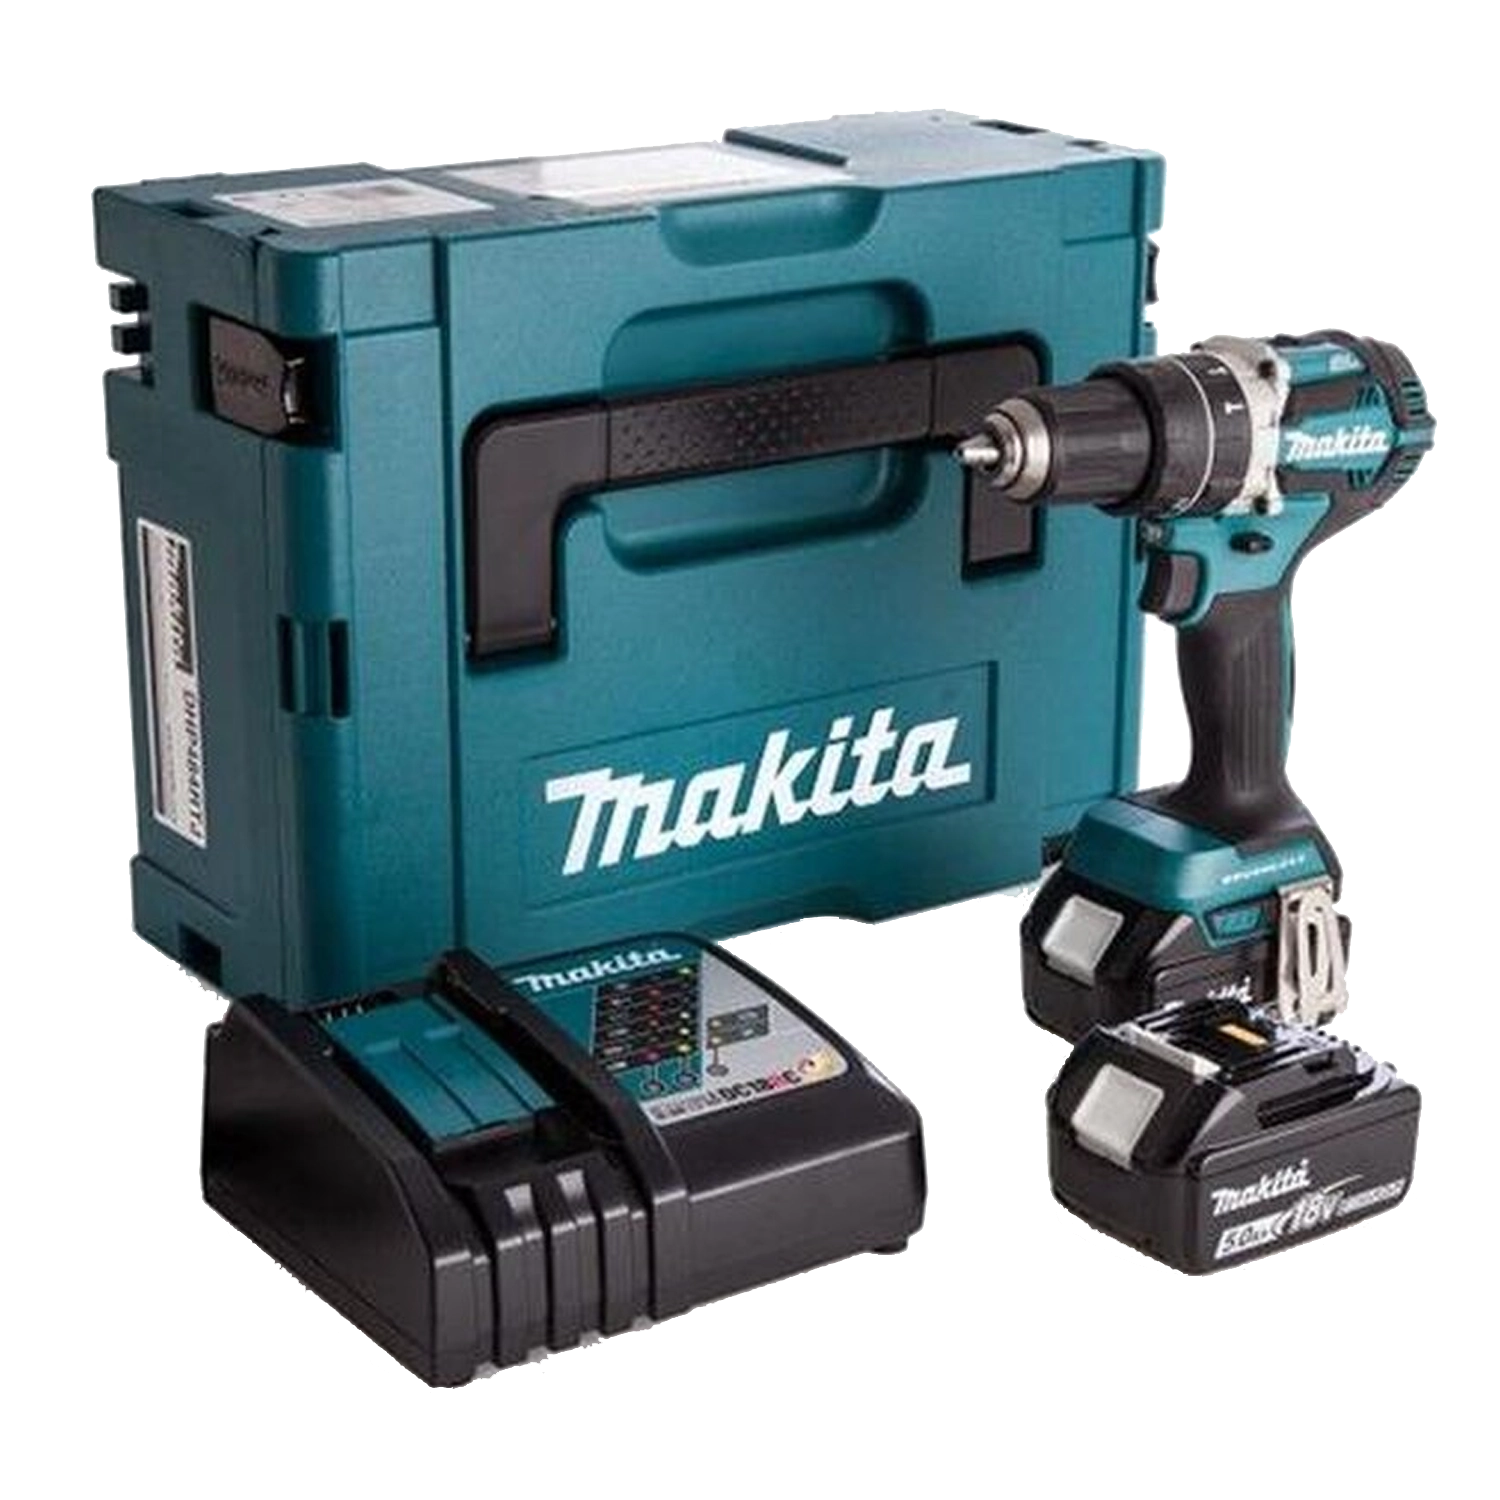 Makita Schroef-Boormachine: Compacte, blauwe boormachine met zwart handvat, led-licht aan de voorkant, twee krachtige accu's, verpakt in een robuuste Makita-koffer.